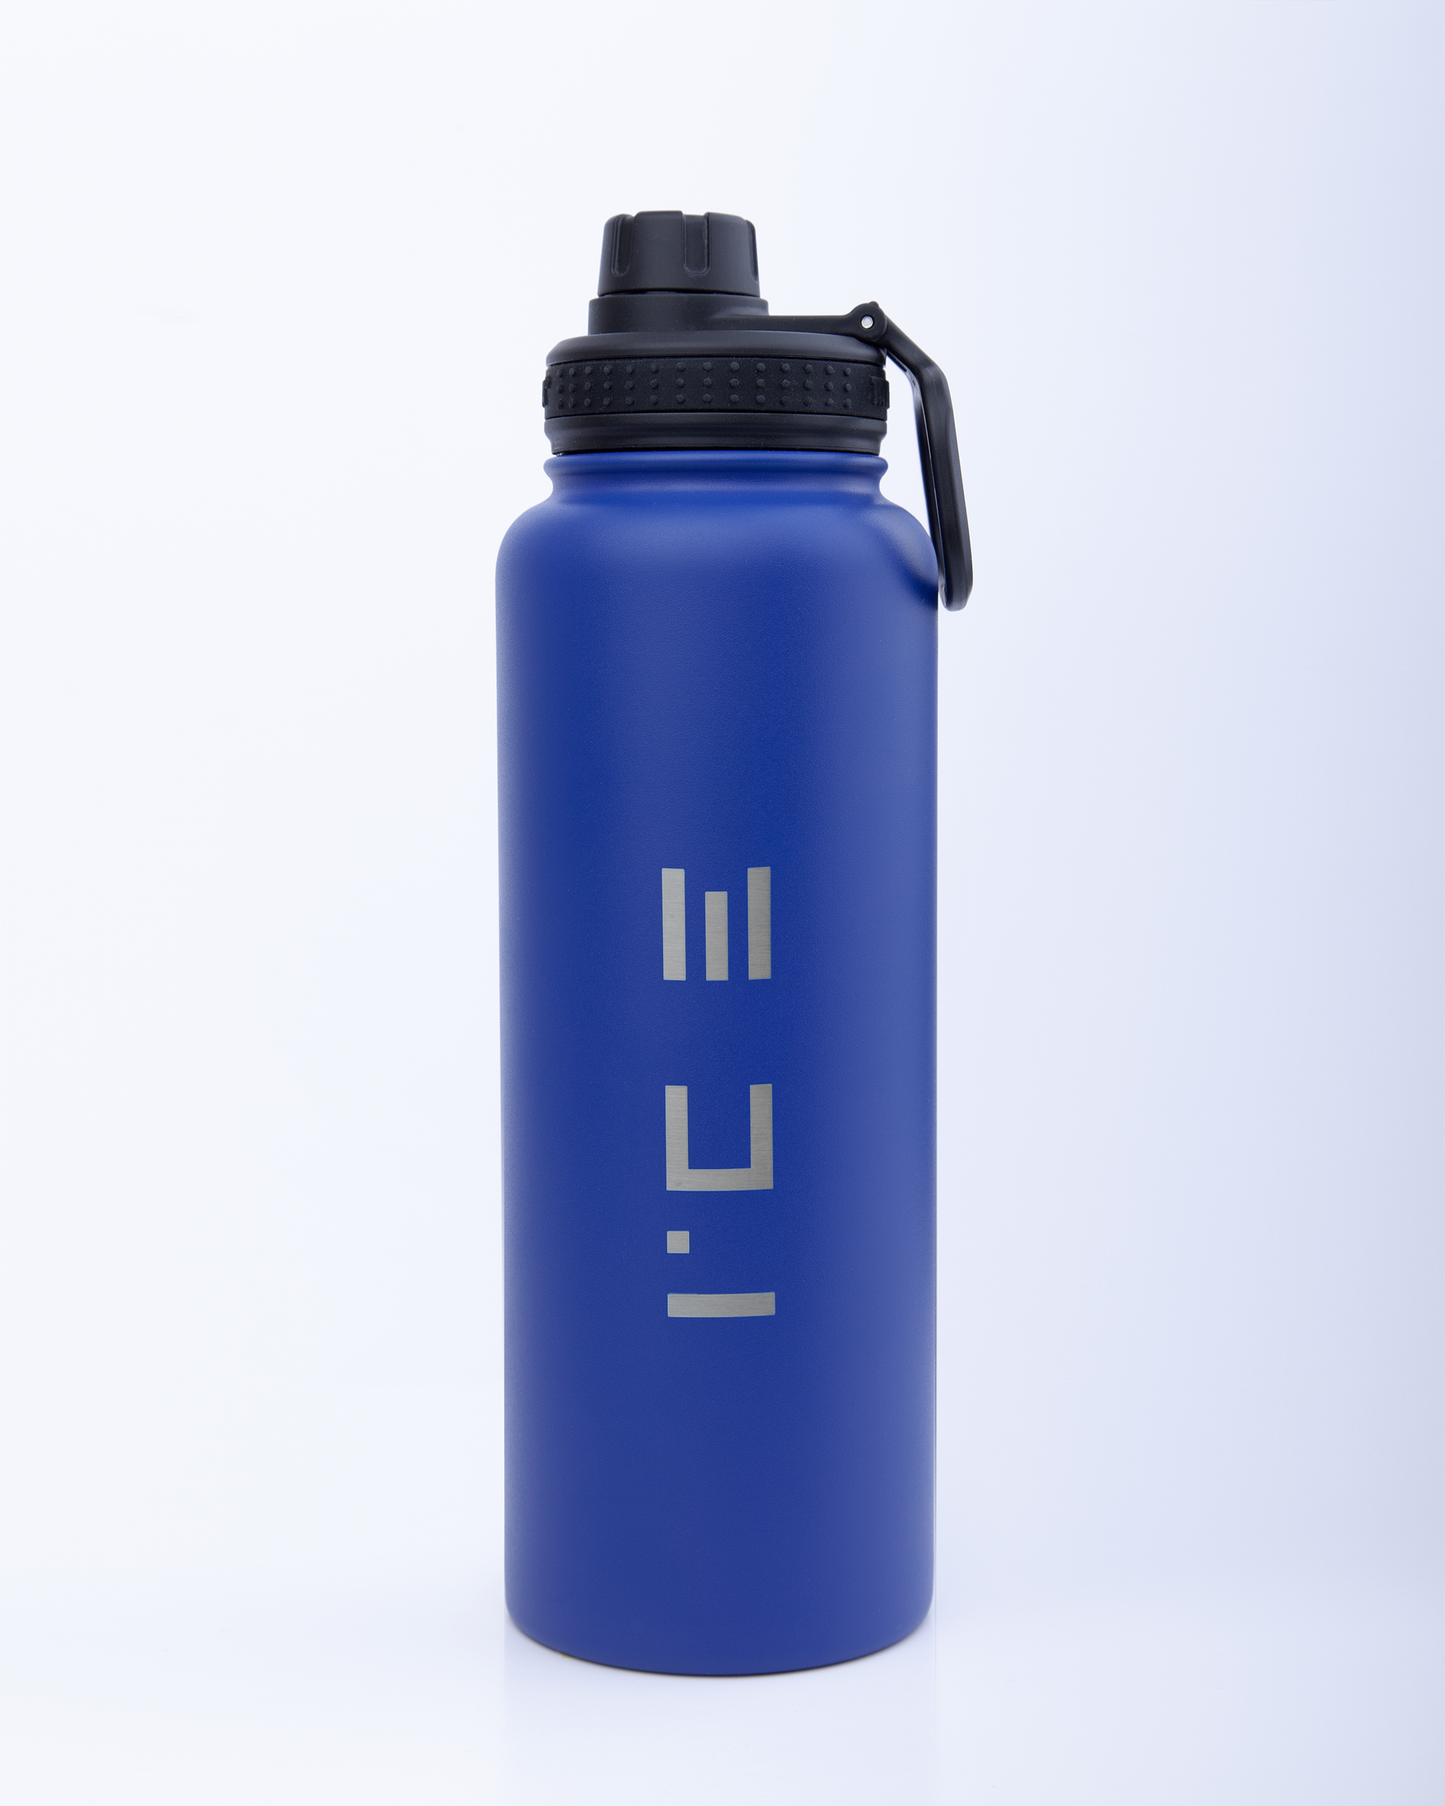 ICE Water Bottle in Blue - 40 oz